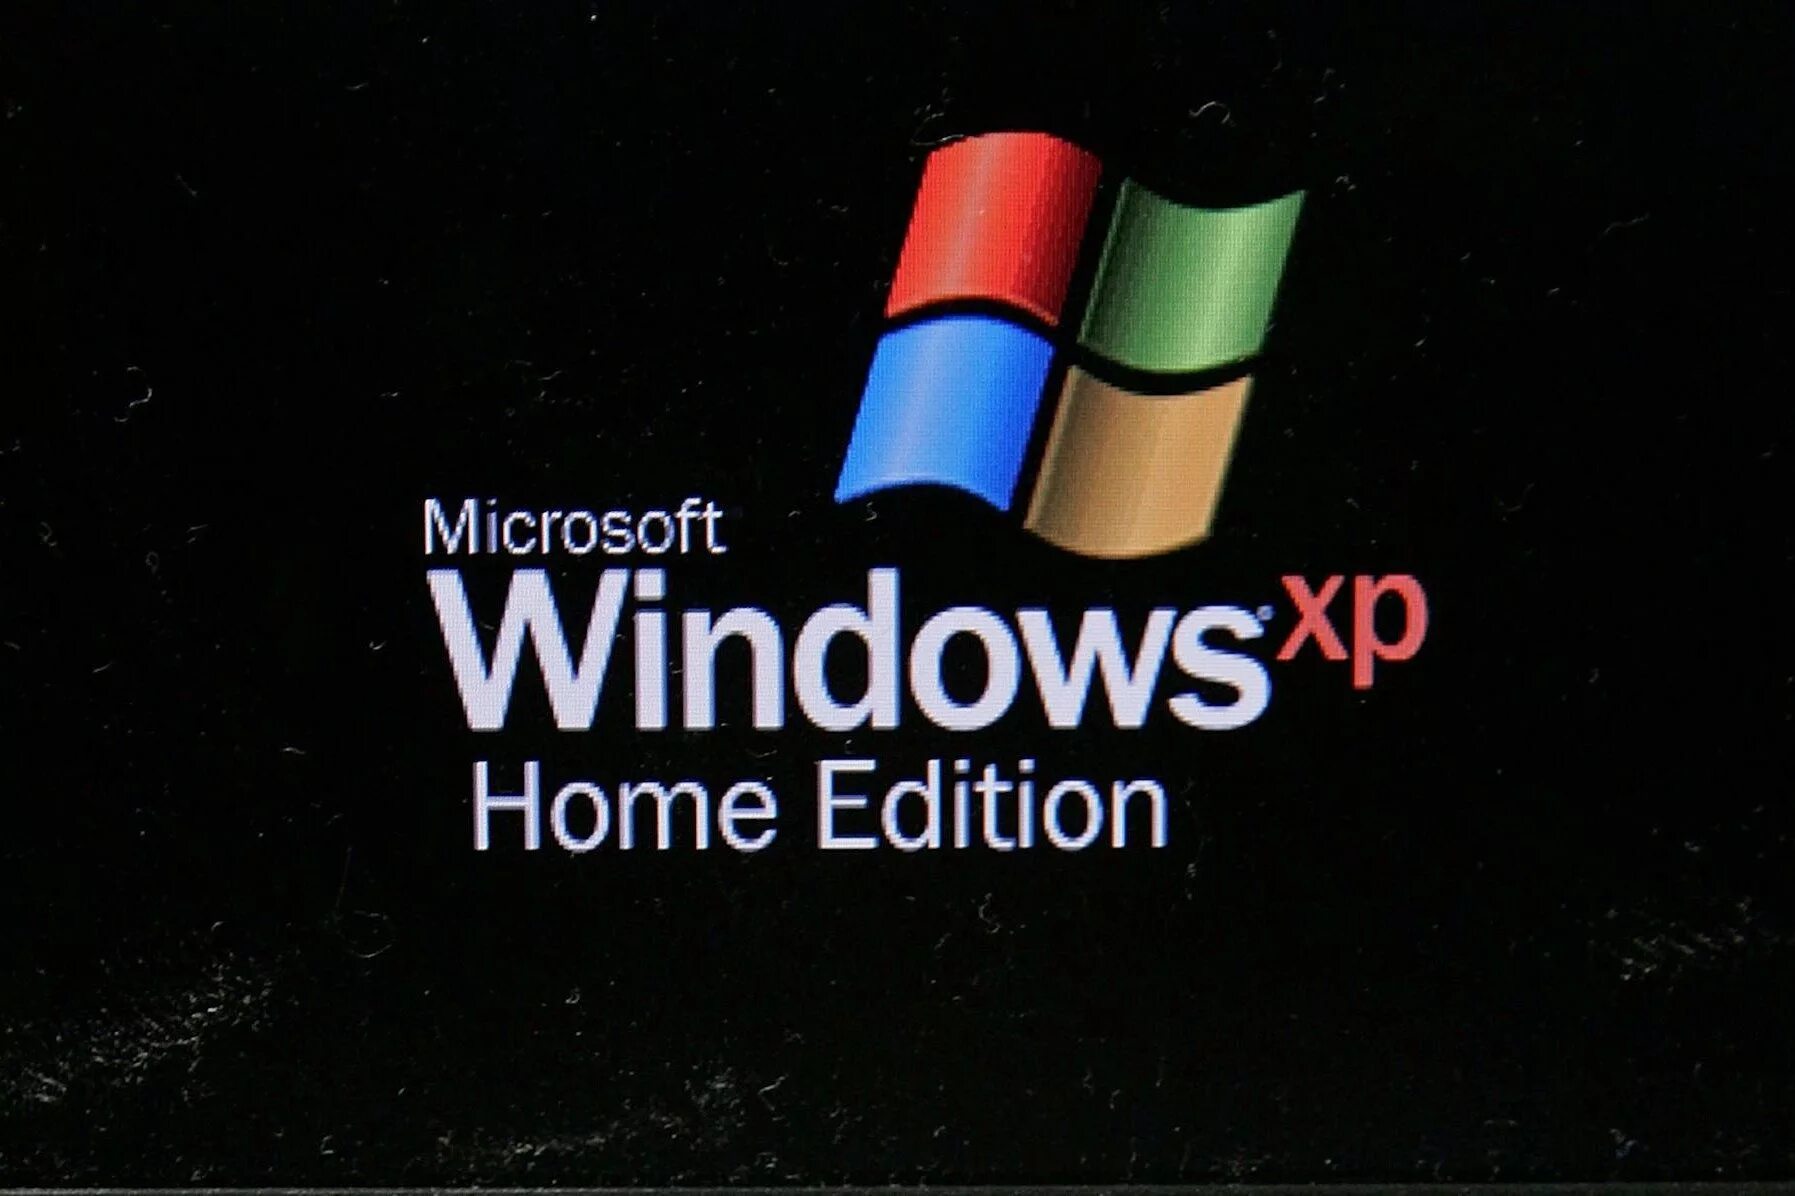 Бесплатная виндовс хр. Загрузка виндовс. Загрузка Windows XP. Экран загрузки Windows XP. Загрузка виндовс хр.